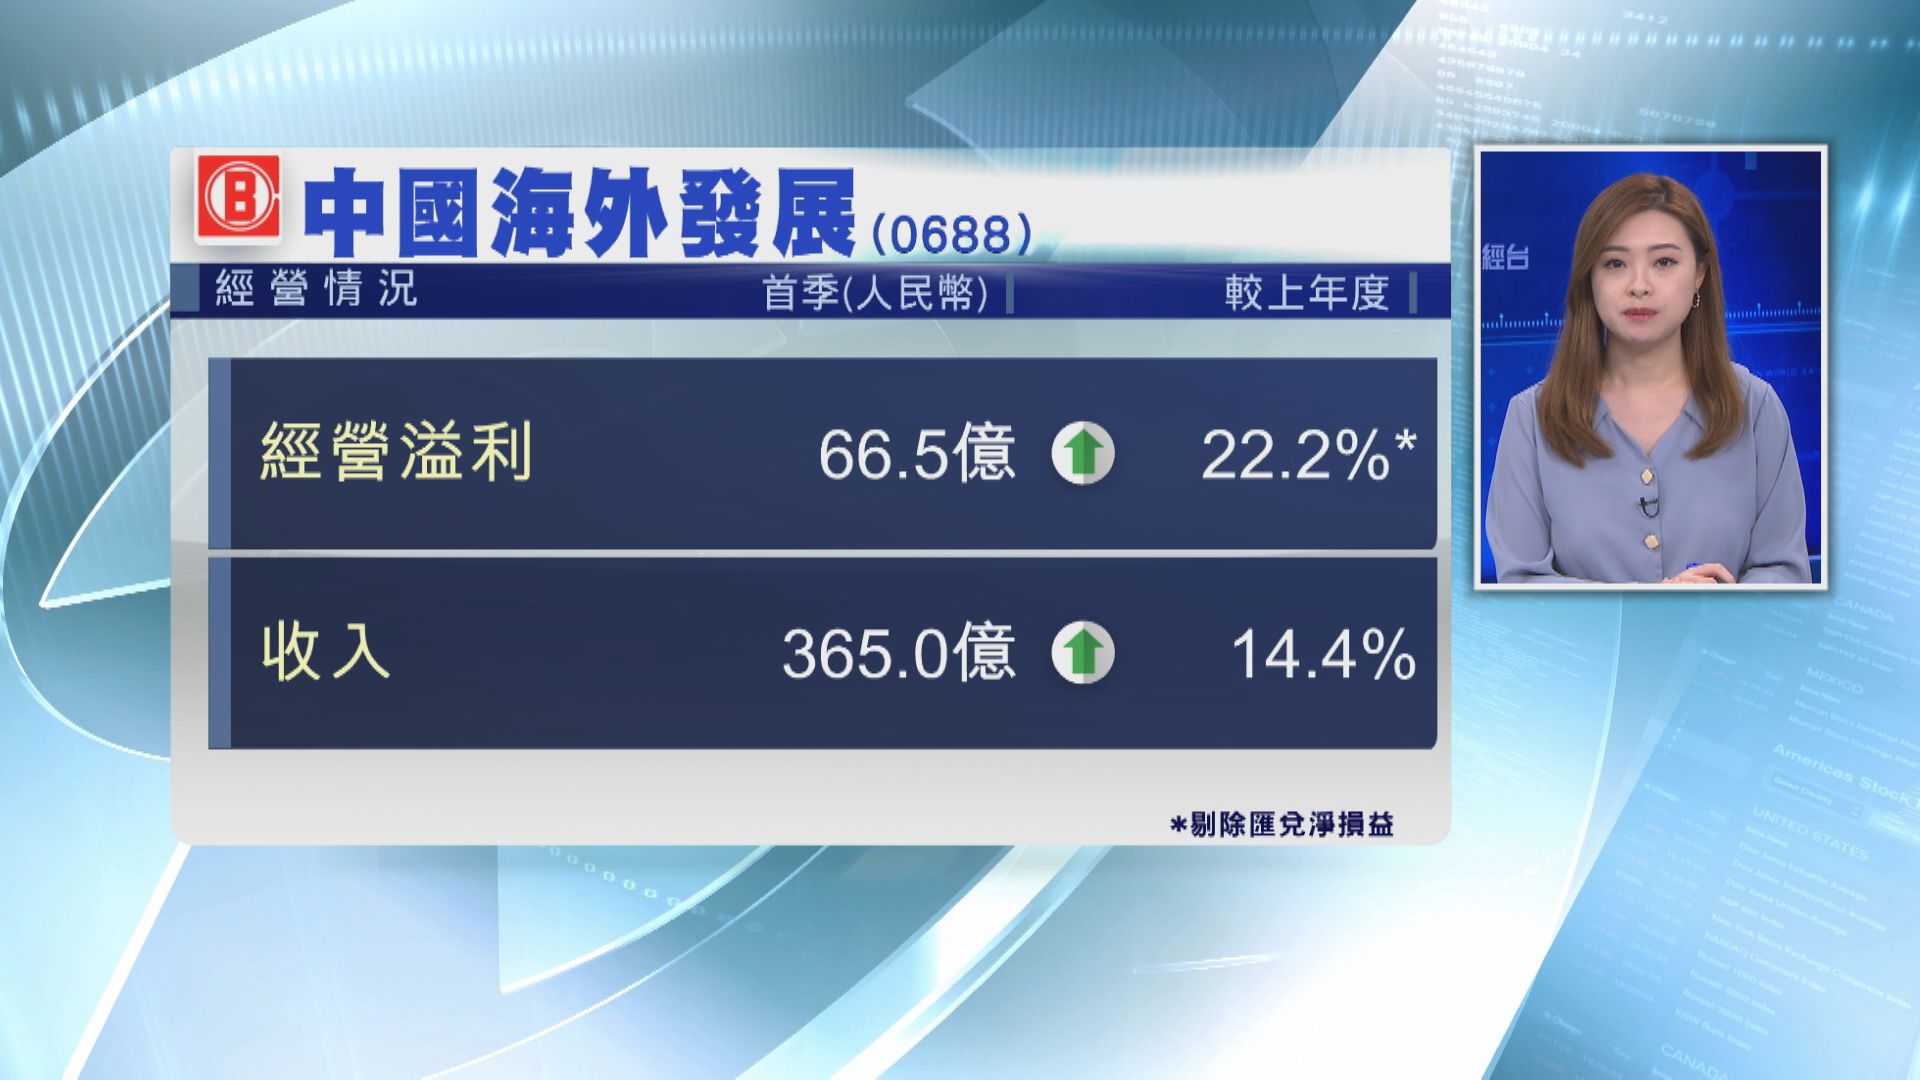 【藍籌業績】中海外首季經營溢利66.5億人幣升22%